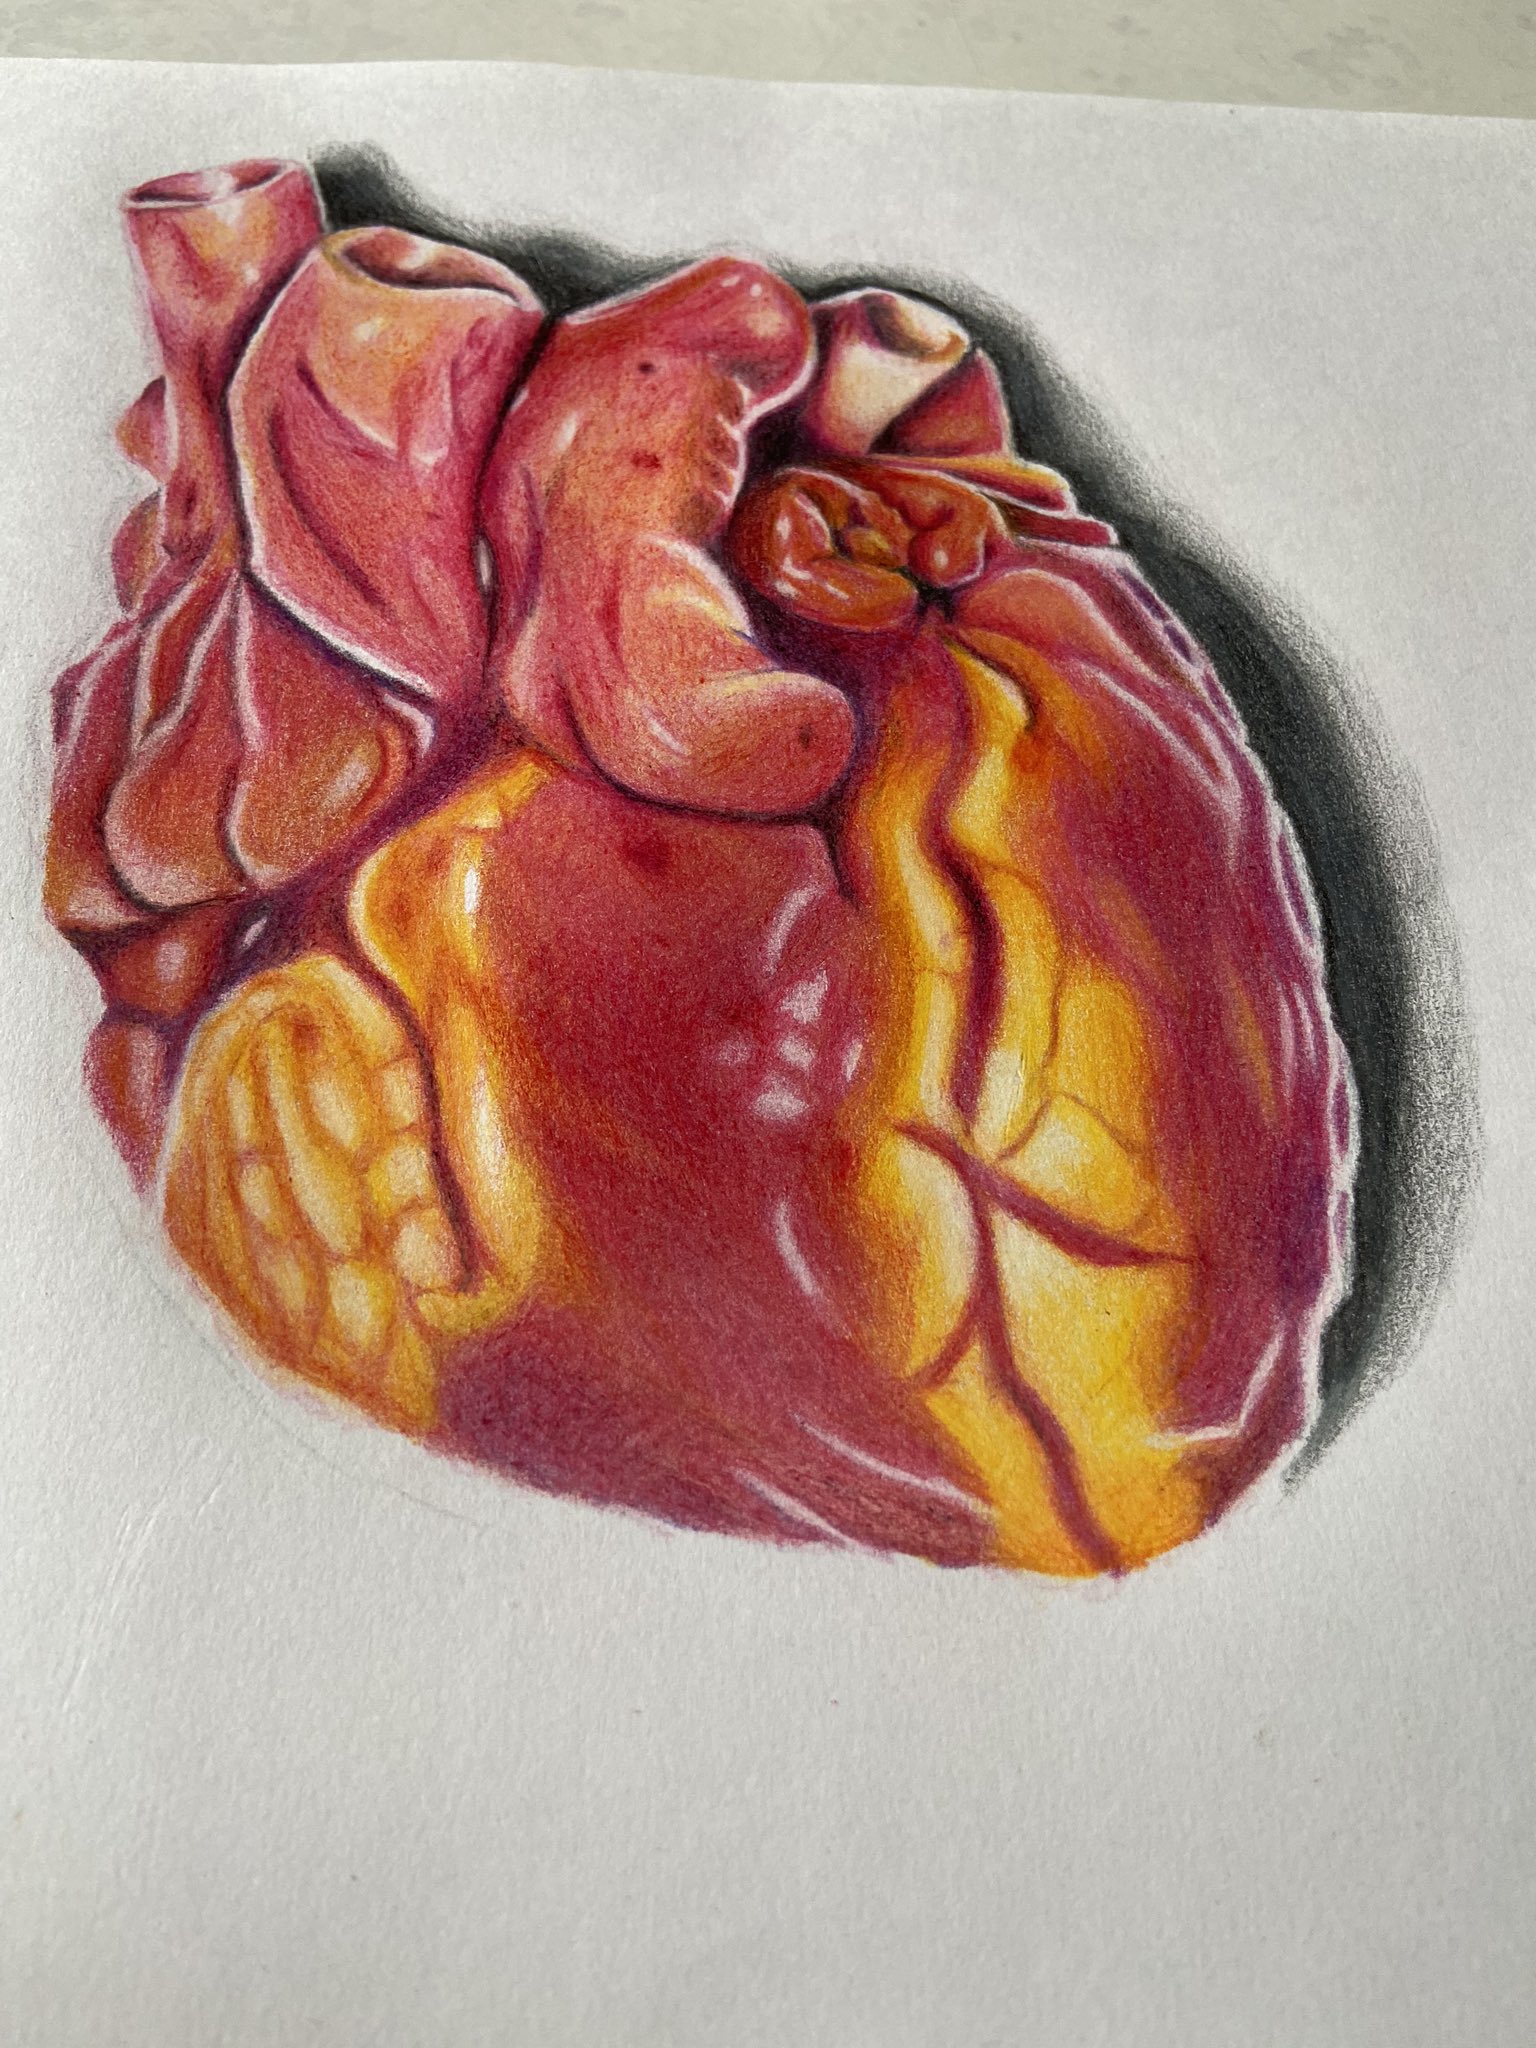 Twitter 上的 Shock 7 心臓の絵を描いてみた 心臓 イラスト 色鉛筆 描いてみた 摘出手術 T Co Gg8dlifpxk Twitter